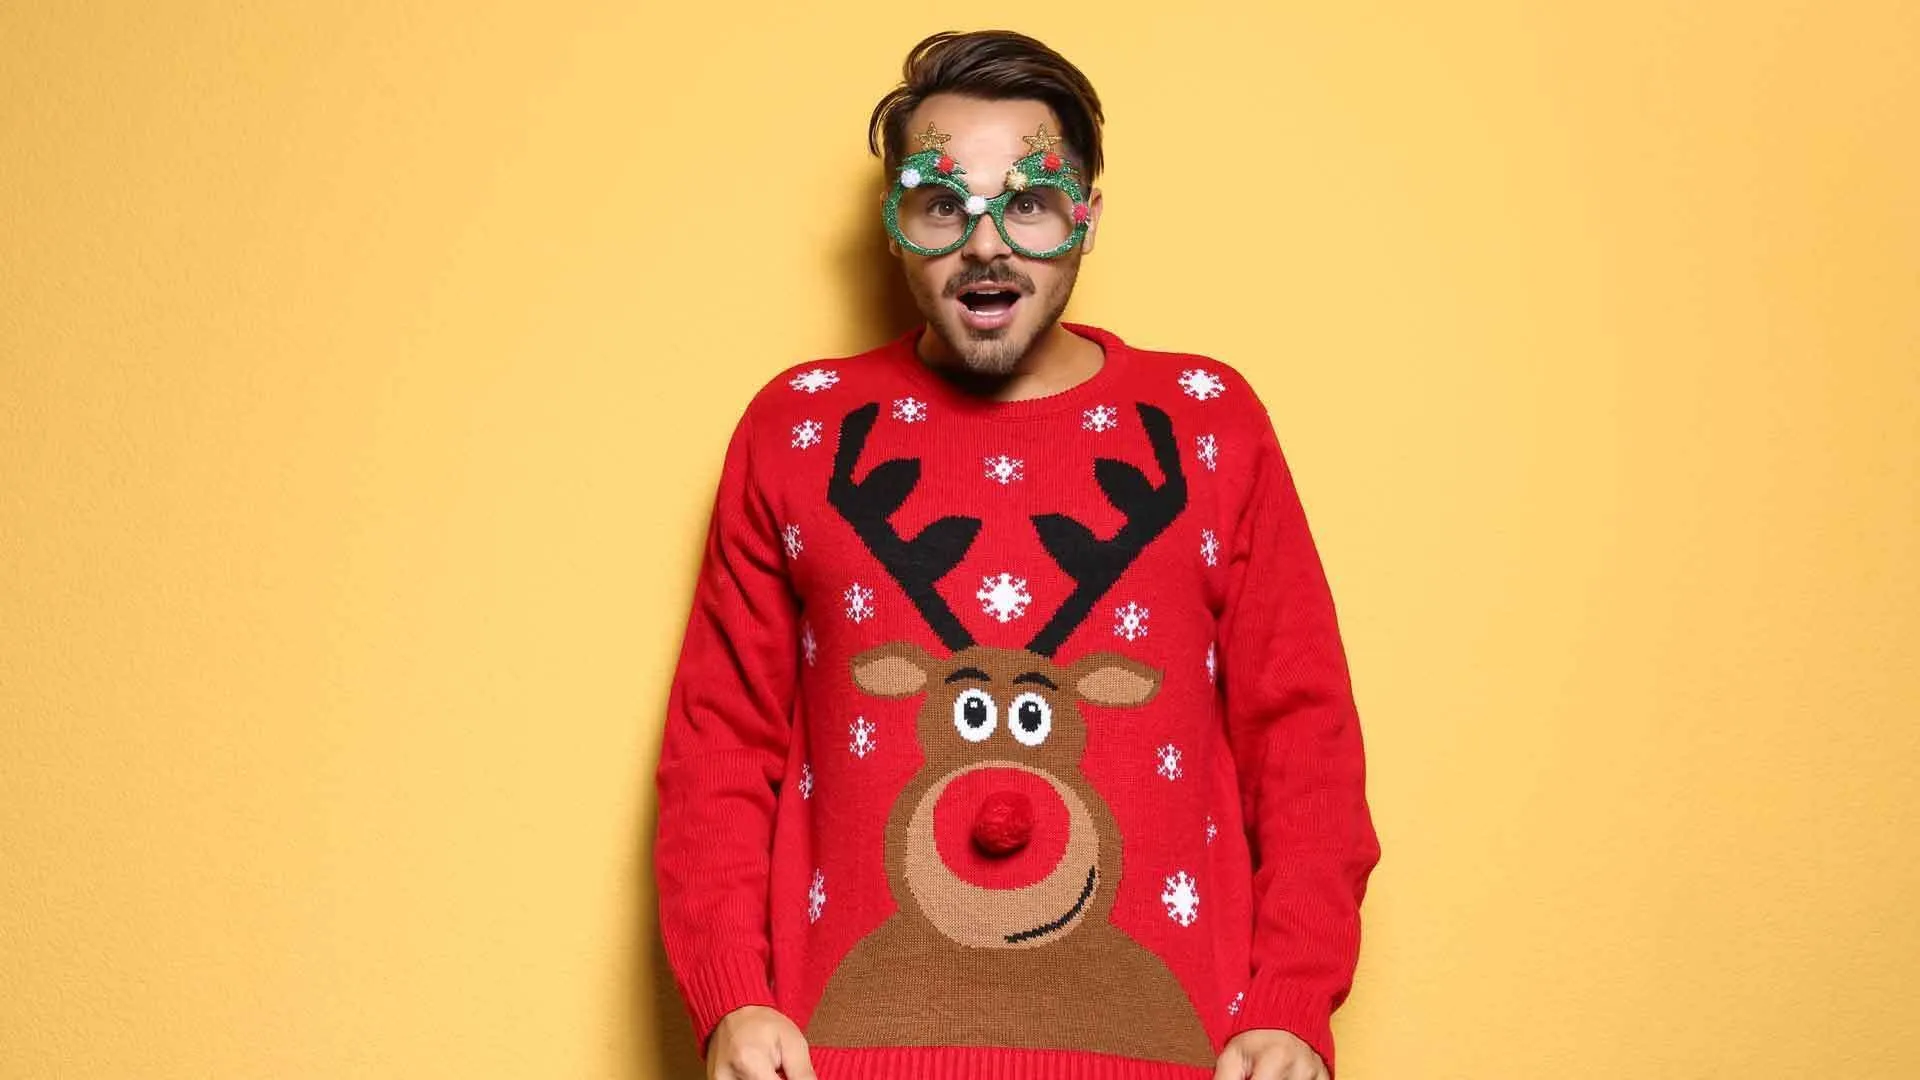 Lelijke kersttruien: waarom we lelijke truien dragen met kerst